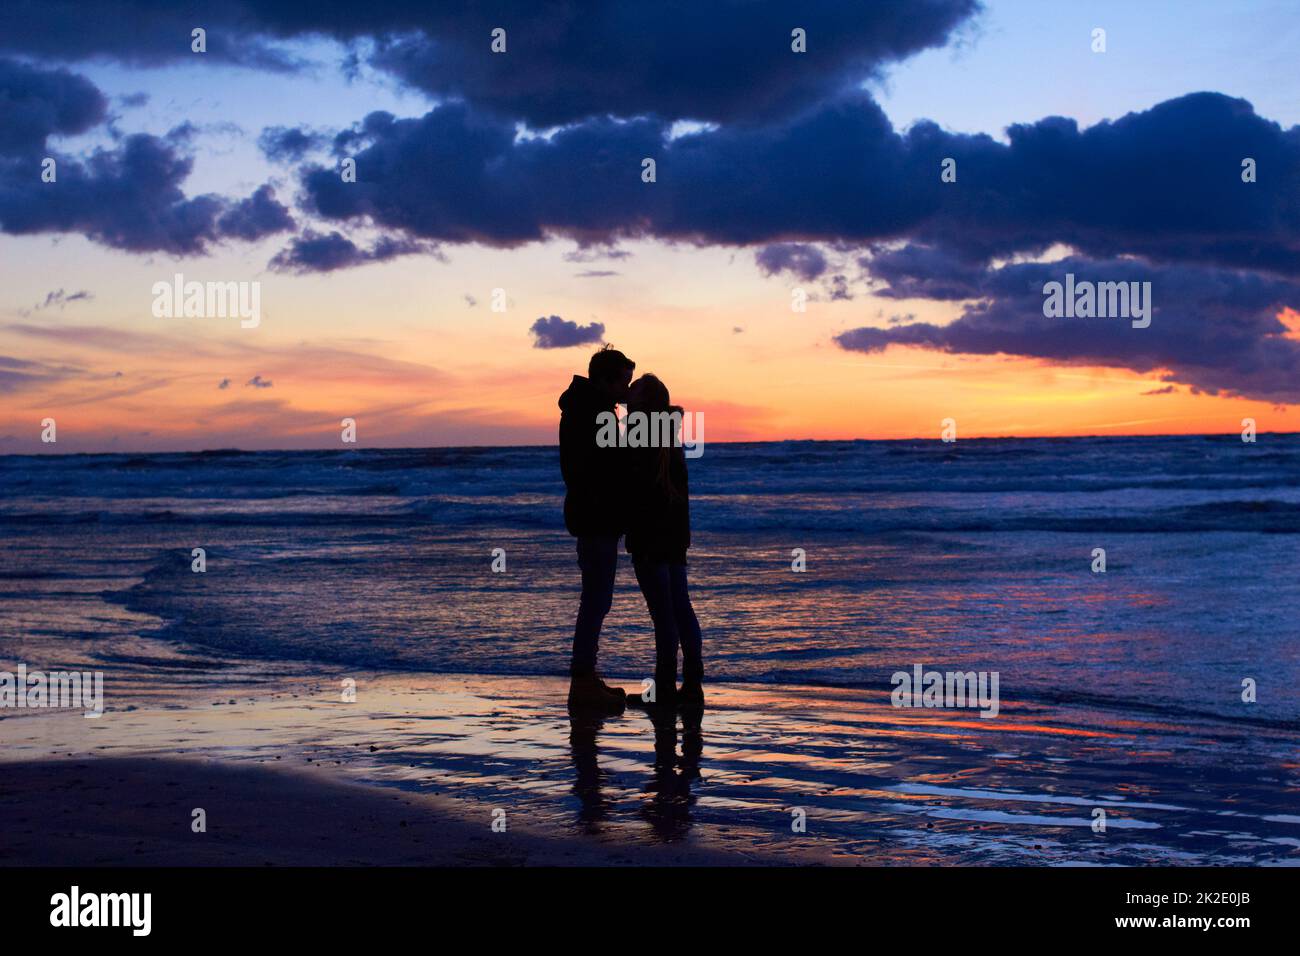 La nature est l'endroit idéal pour un séjour romantique. Silouehette d'un couple embrassant sur la plage au coucher du soleil. Banque D'Images